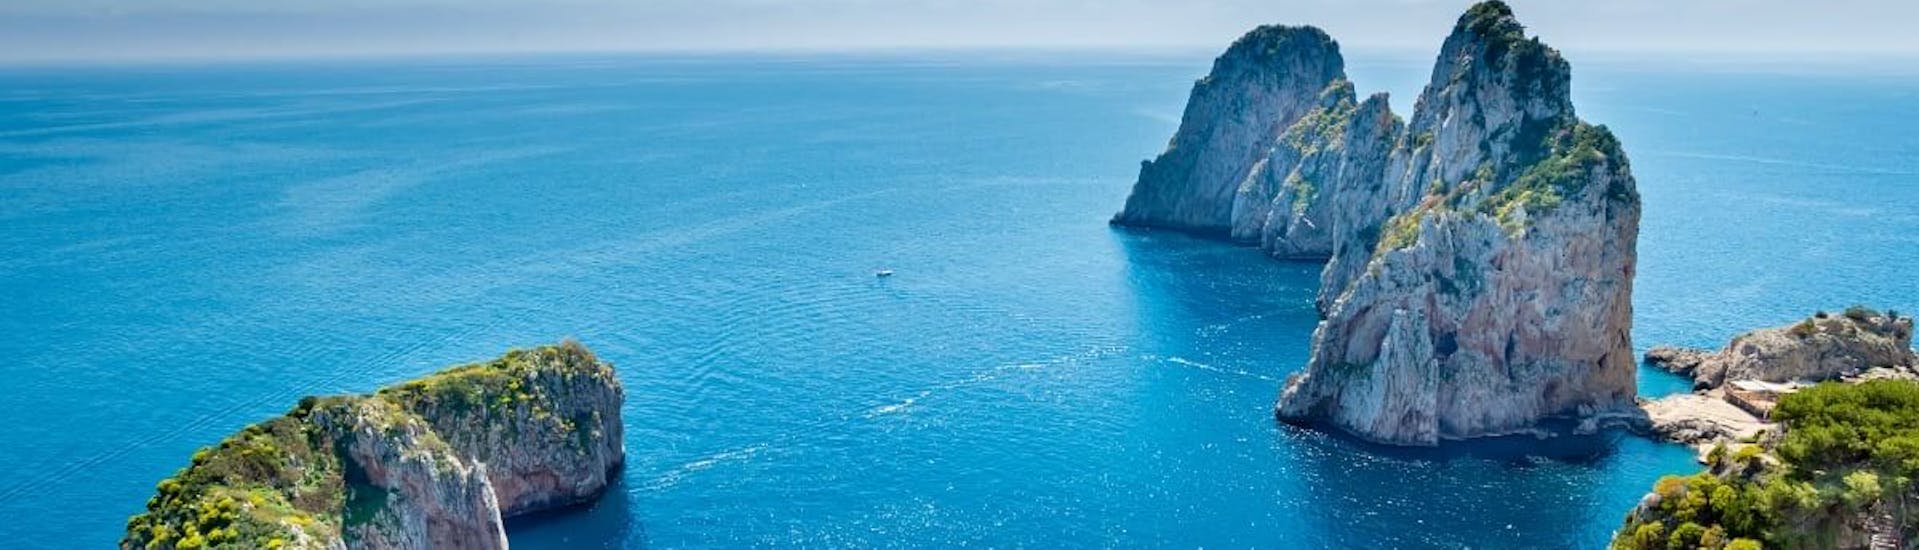 Le acque cristalline di Sorrento, dove si svolgerà la gita in barca da Pozzuoli a Capri e Sorrento con pranzo.